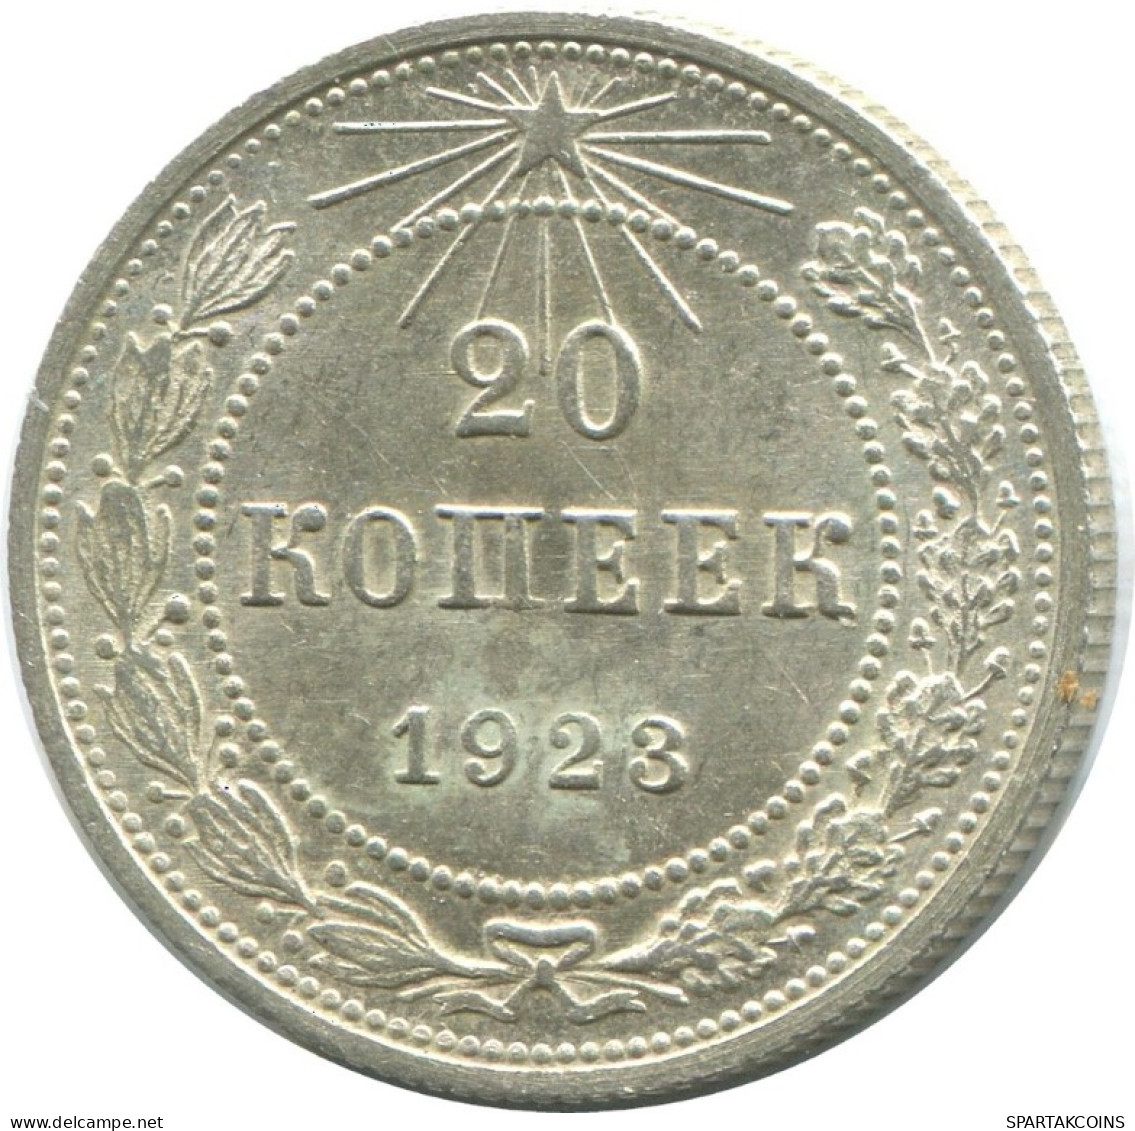 20 KOPEKS 1923 RUSSIA RSFSR SILVER Coin HIGH GRADE #AF702.U.A - Russland